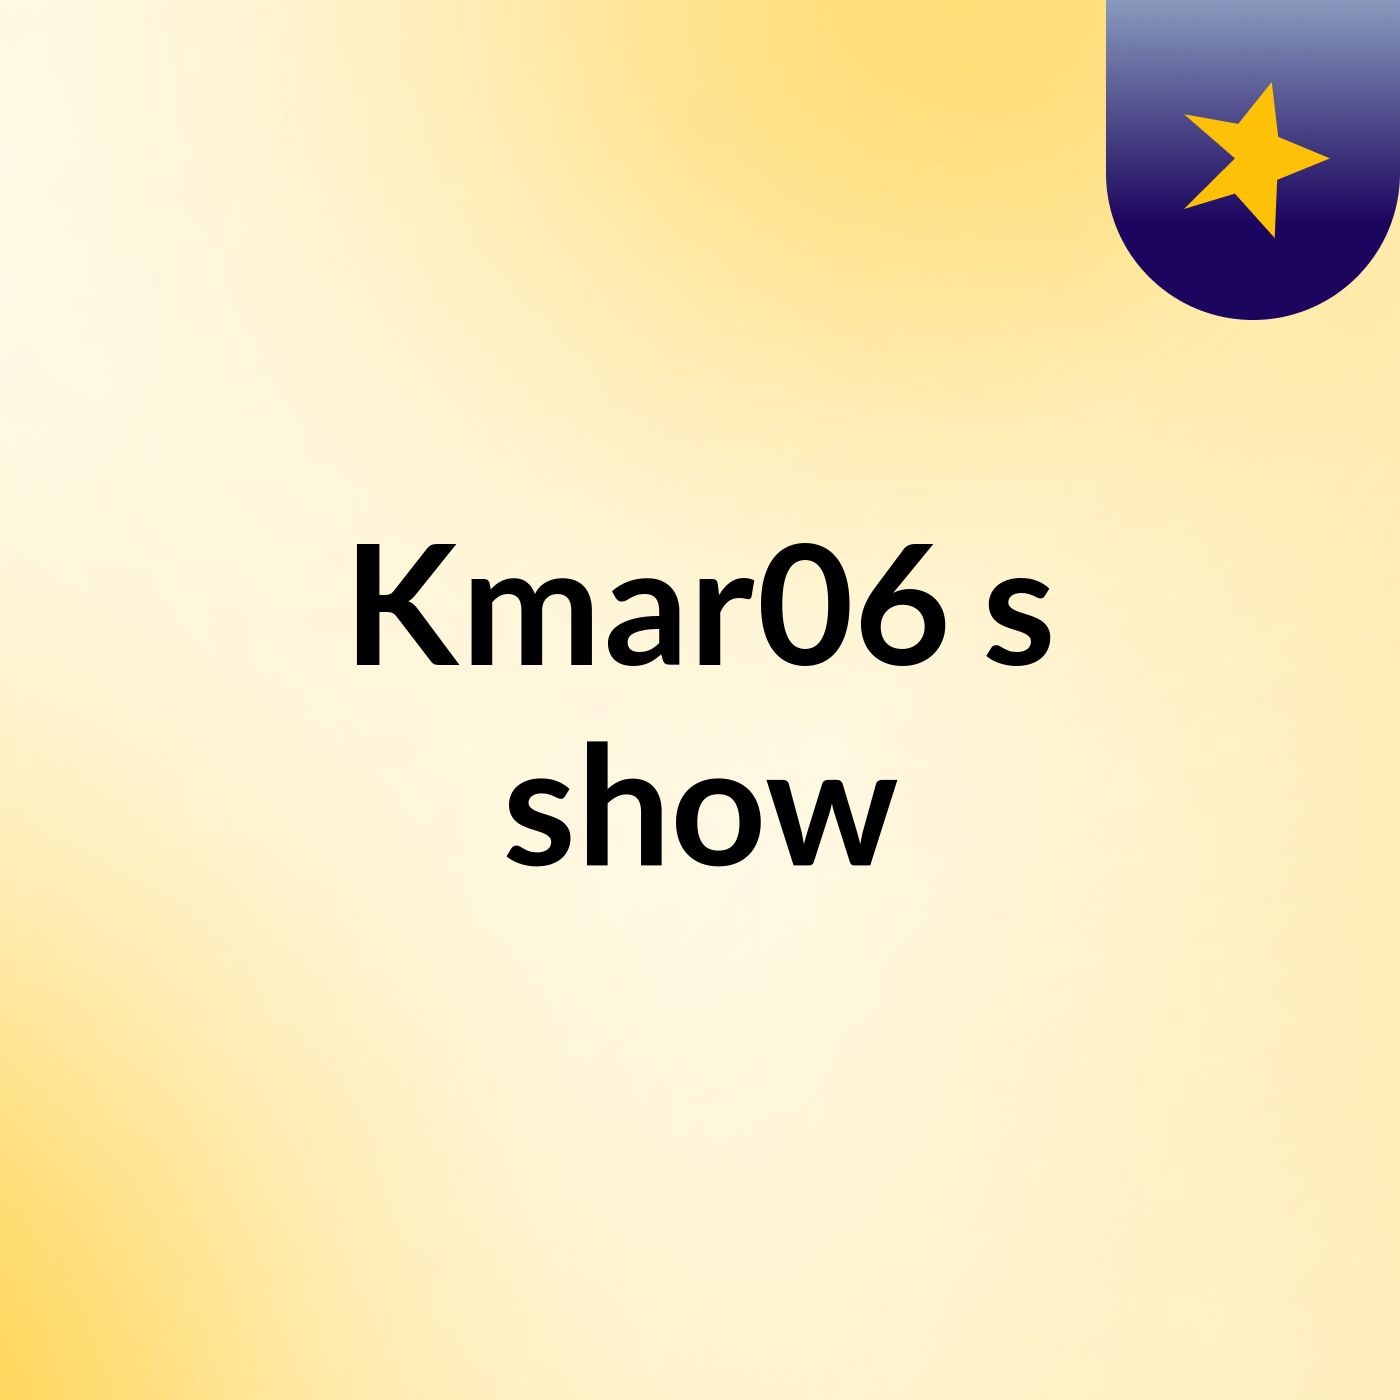 Kmar06's show